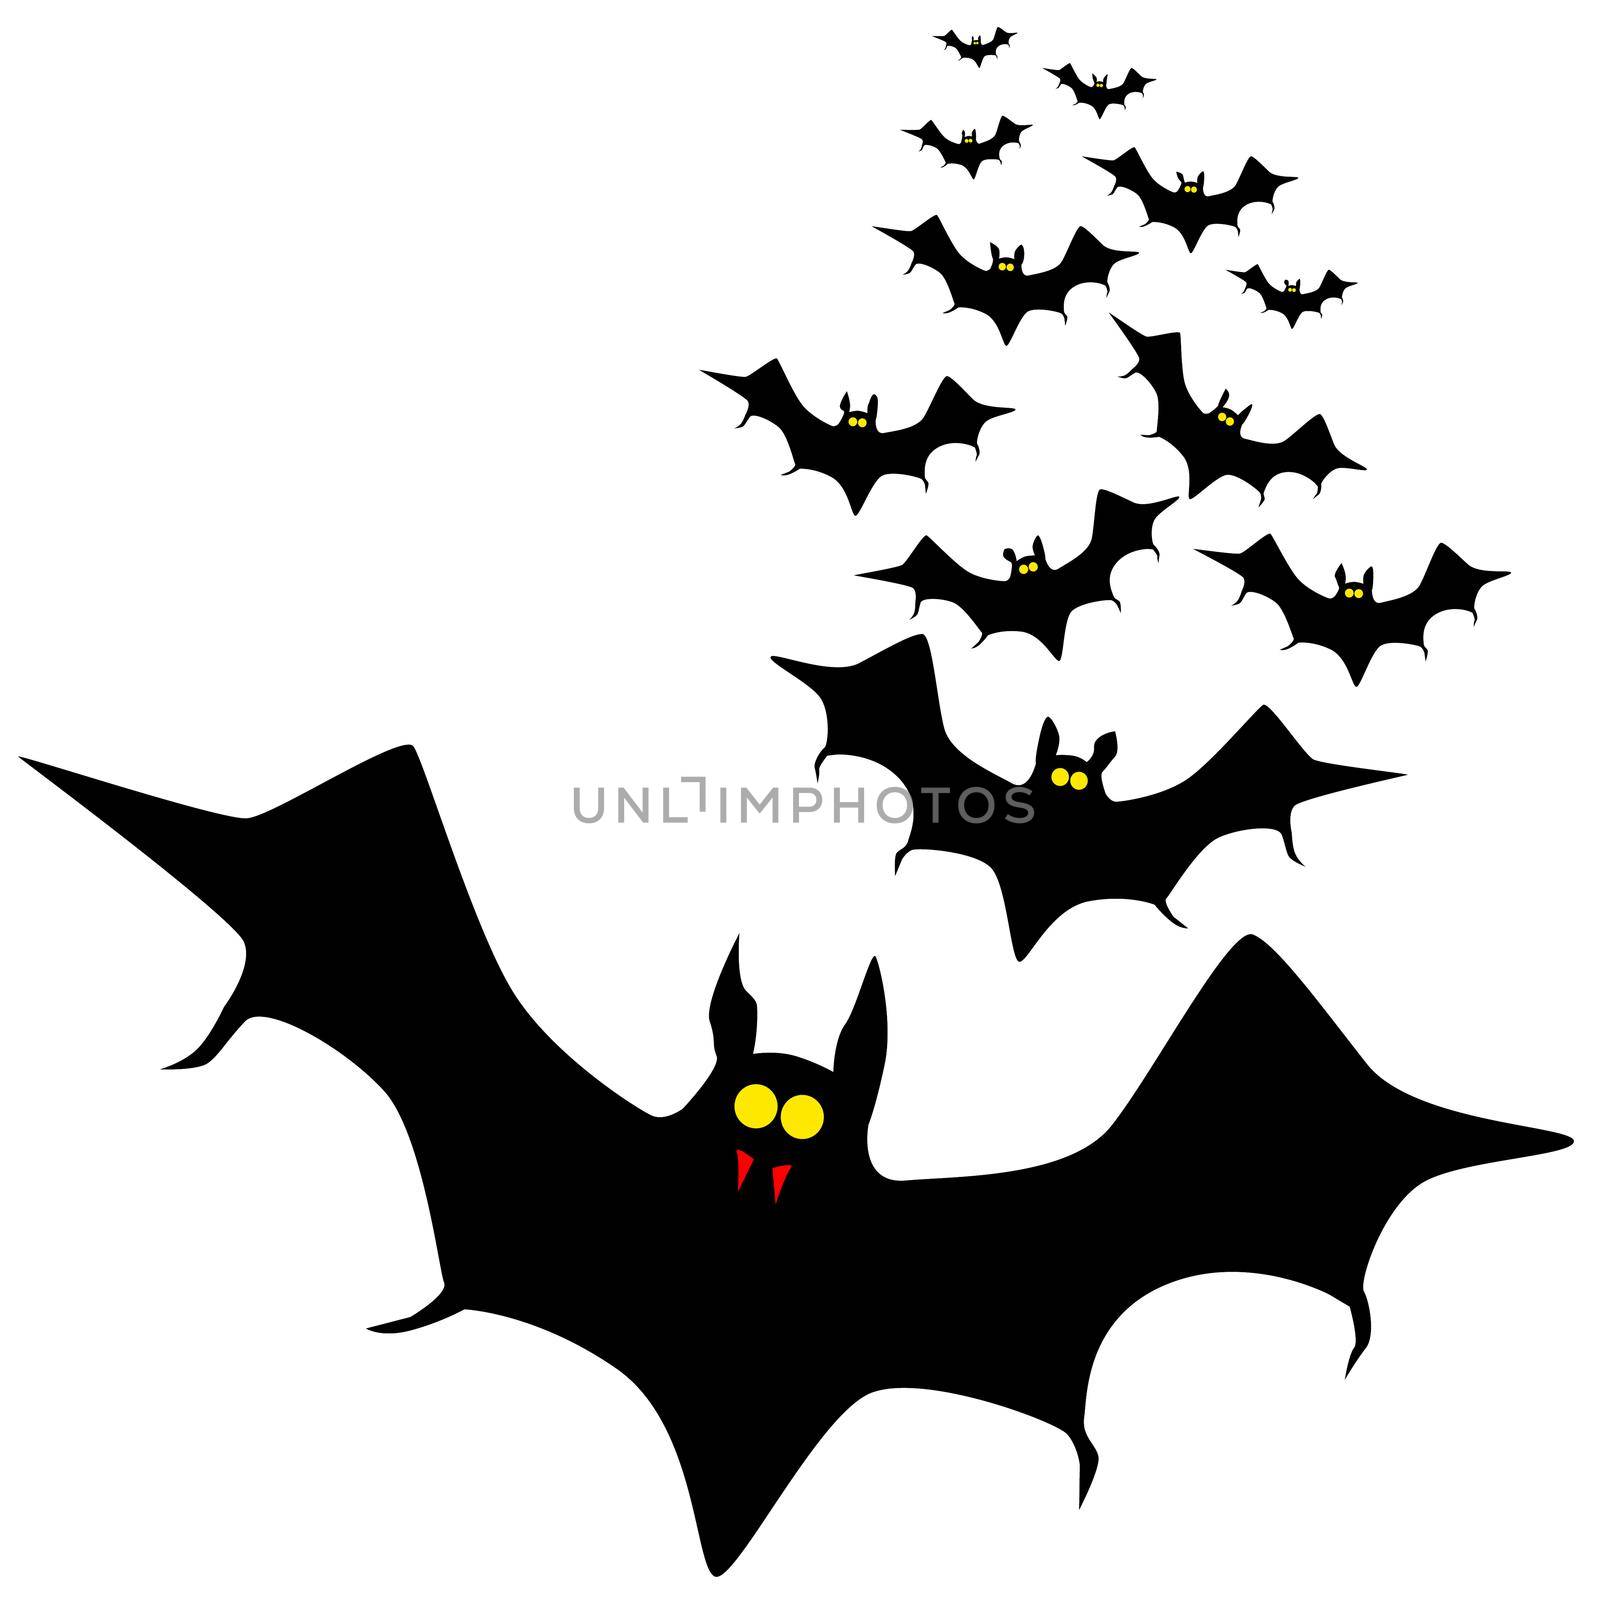 Vampire bats flying in formation.